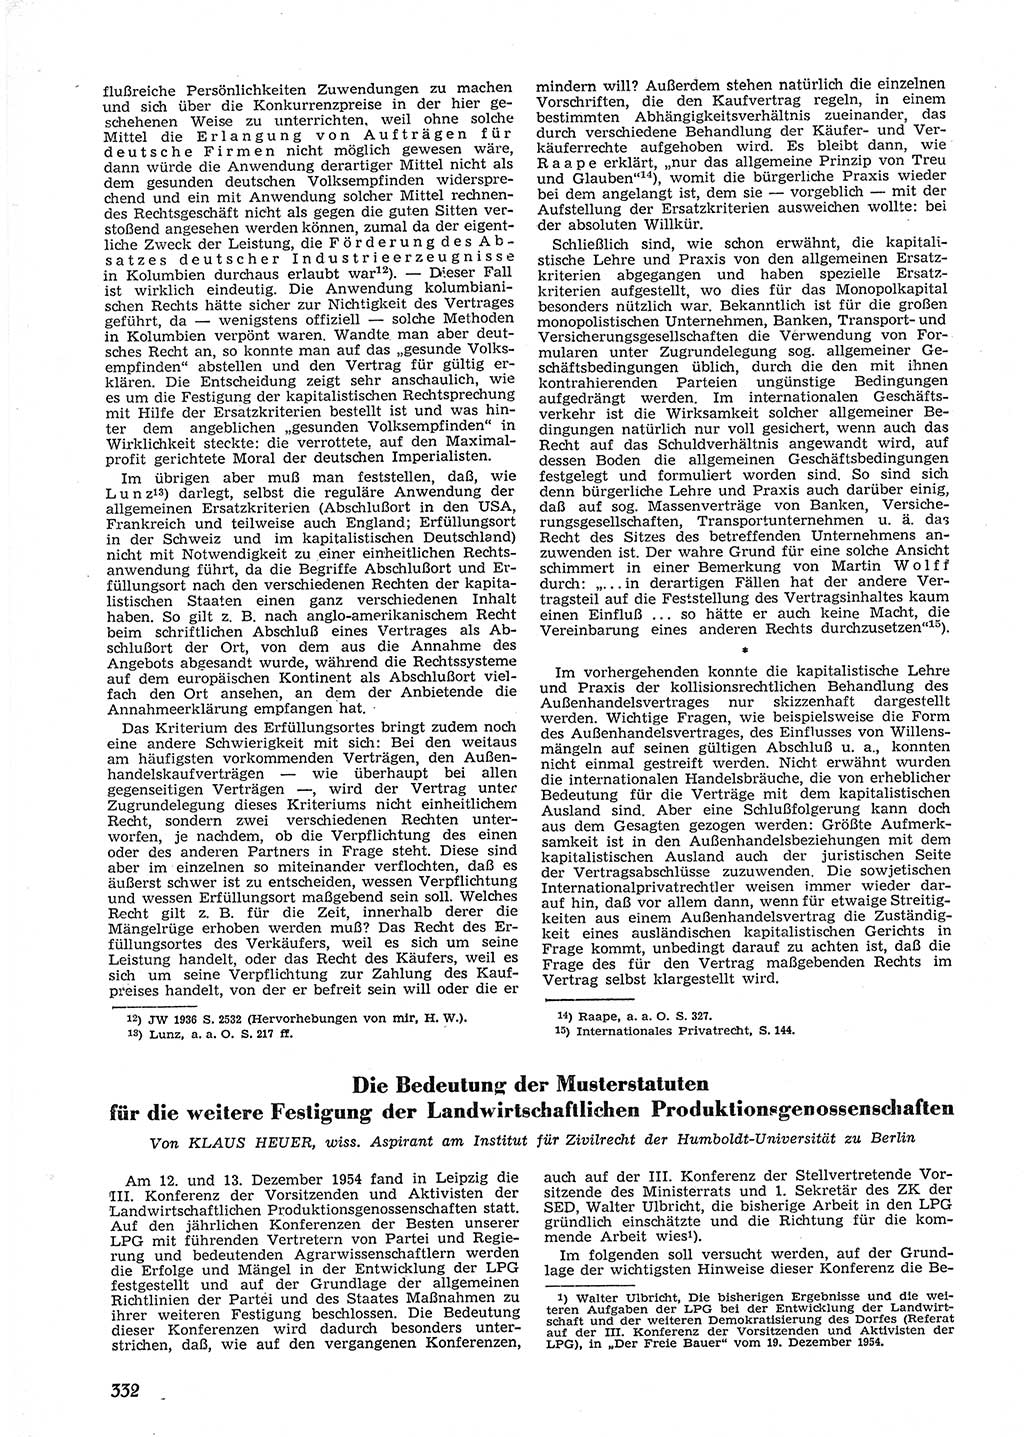 Neue Justiz (NJ), Zeitschrift für Recht und Rechtswissenschaft [Deutsche Demokratische Republik (DDR)], 9. Jahrgang 1955, Seite 332 (NJ DDR 1955, S. 332)